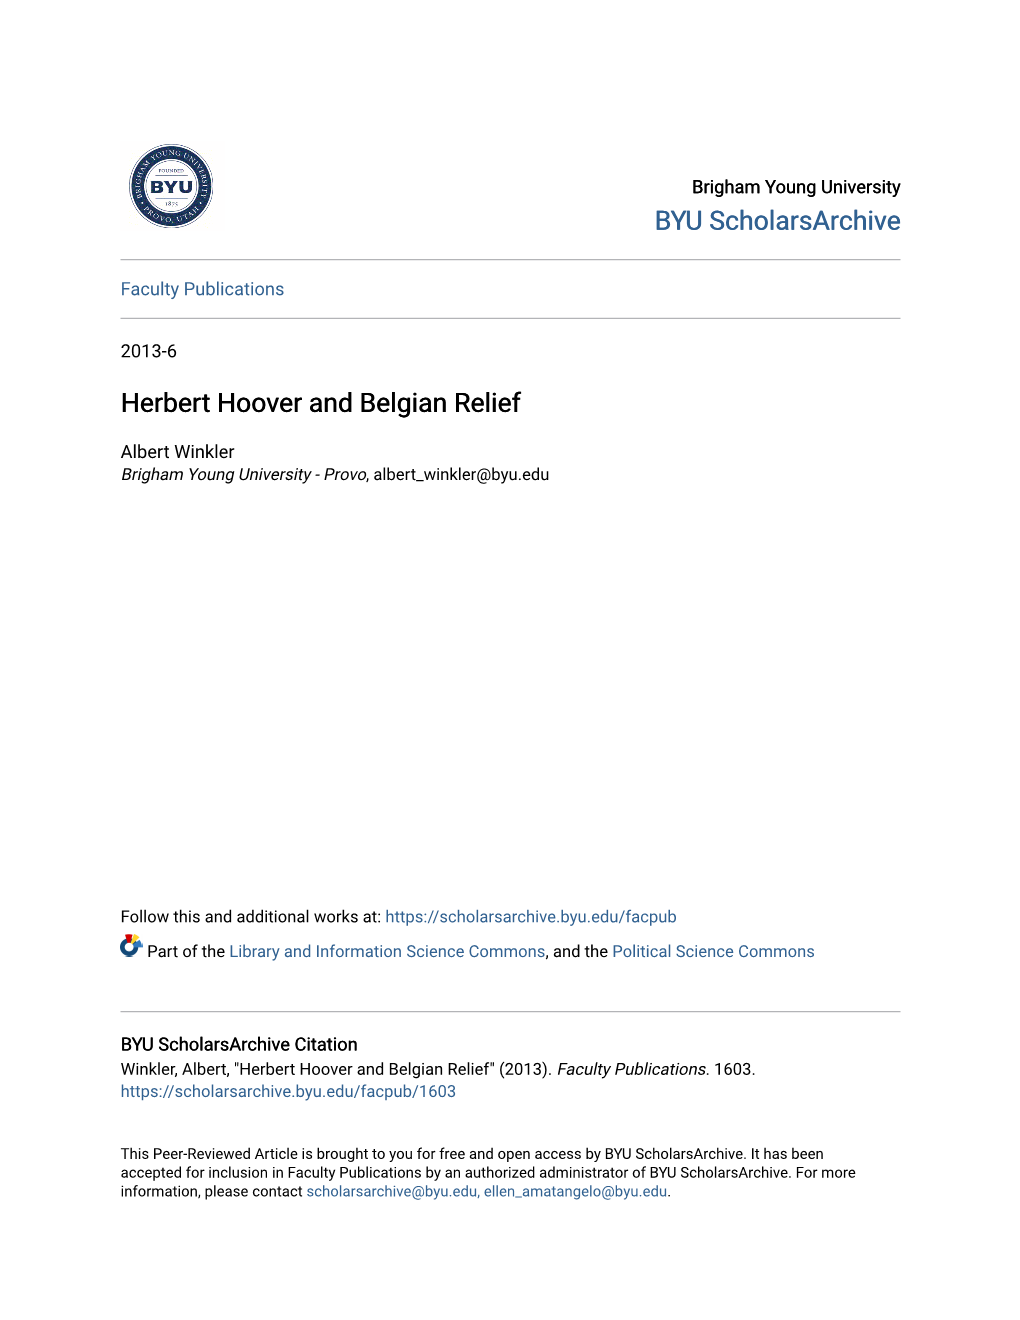 Herbert Hoover and Belgian Relief